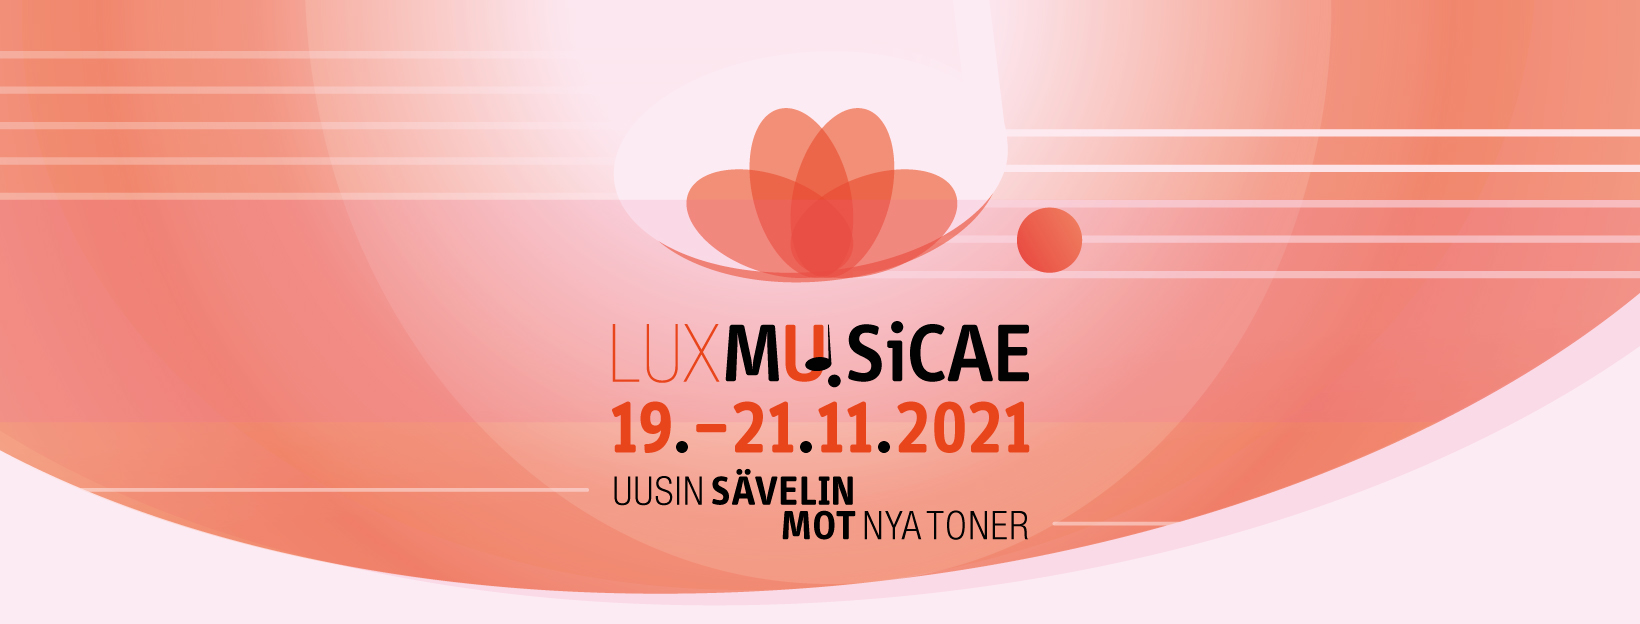 Lux Musicae affisch